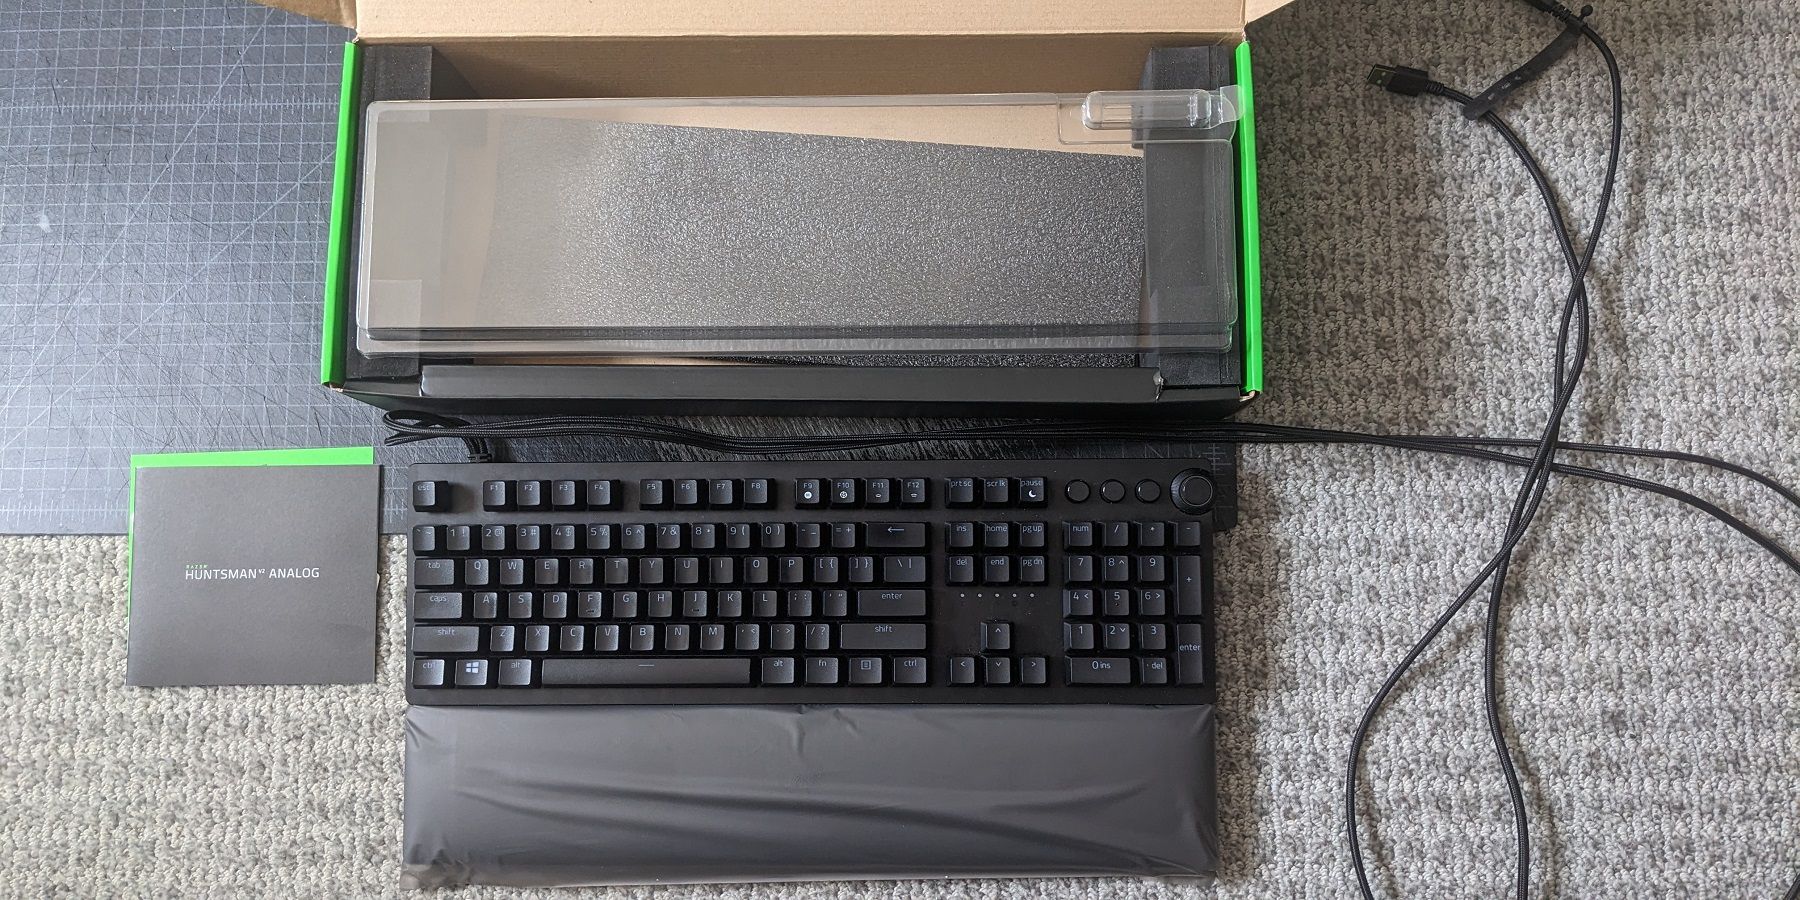 Razer Huntsman V2 Analog Gaming Keyboard Chroma RGB Lighting - Black  811659039927